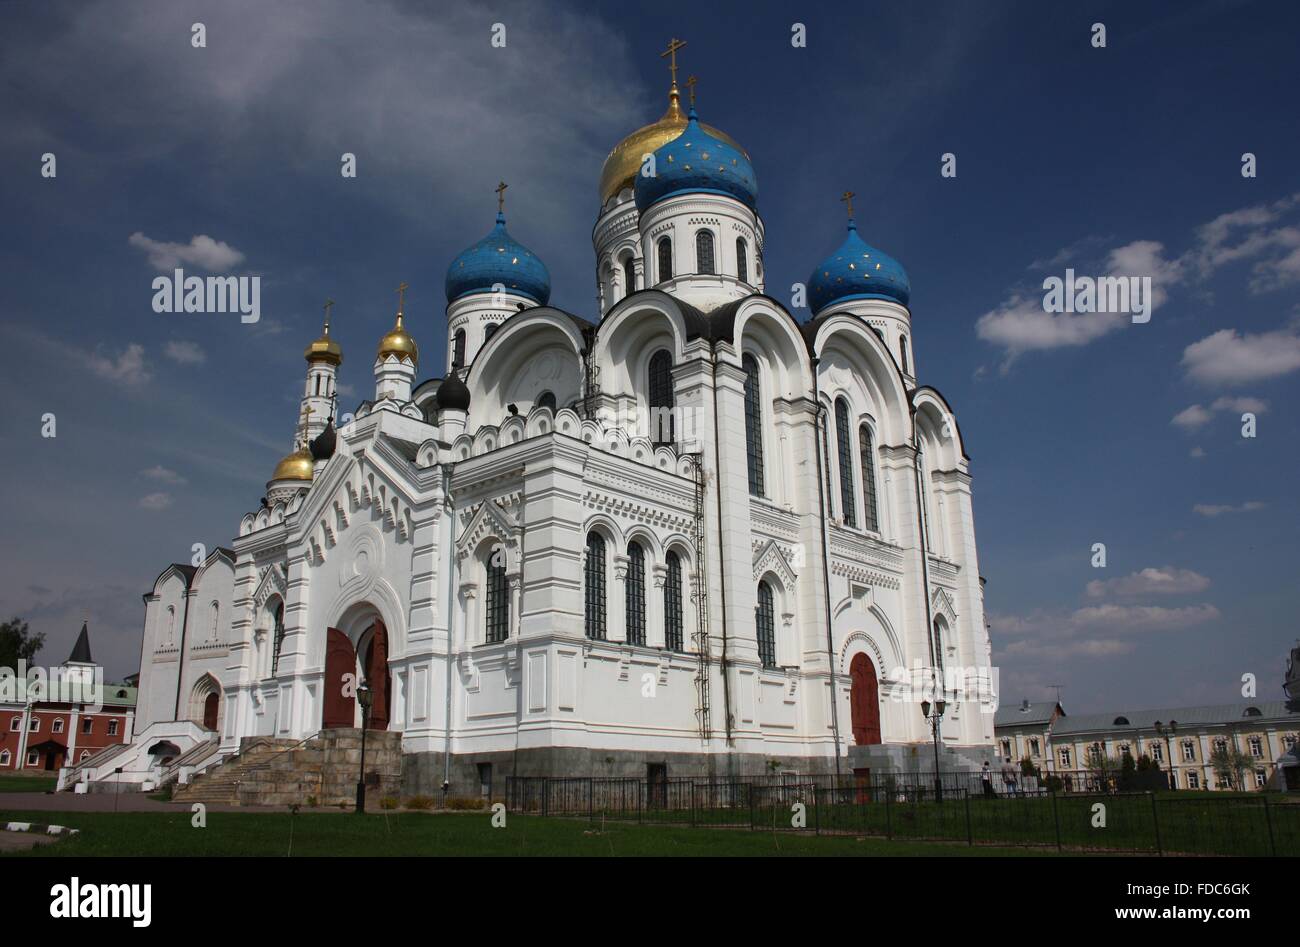 Transfiguration Cathedral. St. Nicholas Ugreshsky monastery. Russia, Moscow region, Dzerzhinskiy Stock Photo